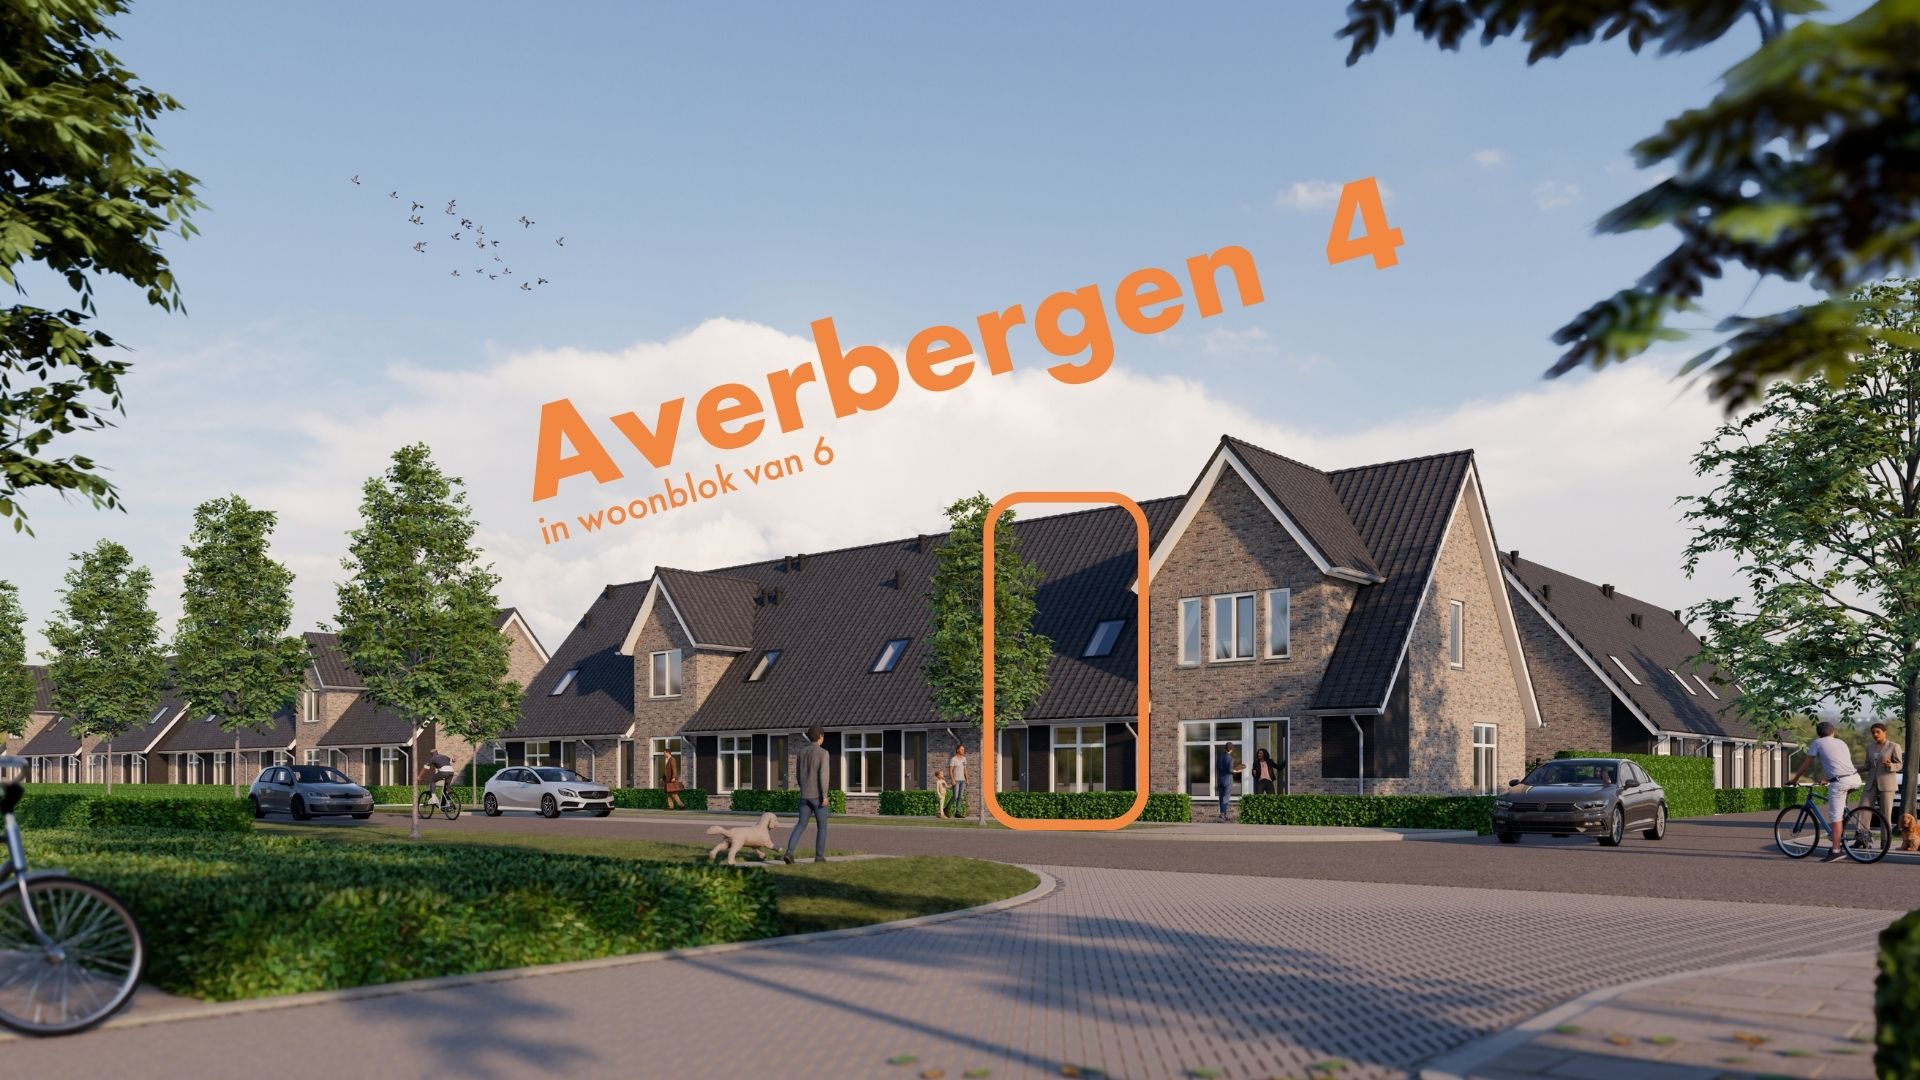 Averbergen 4